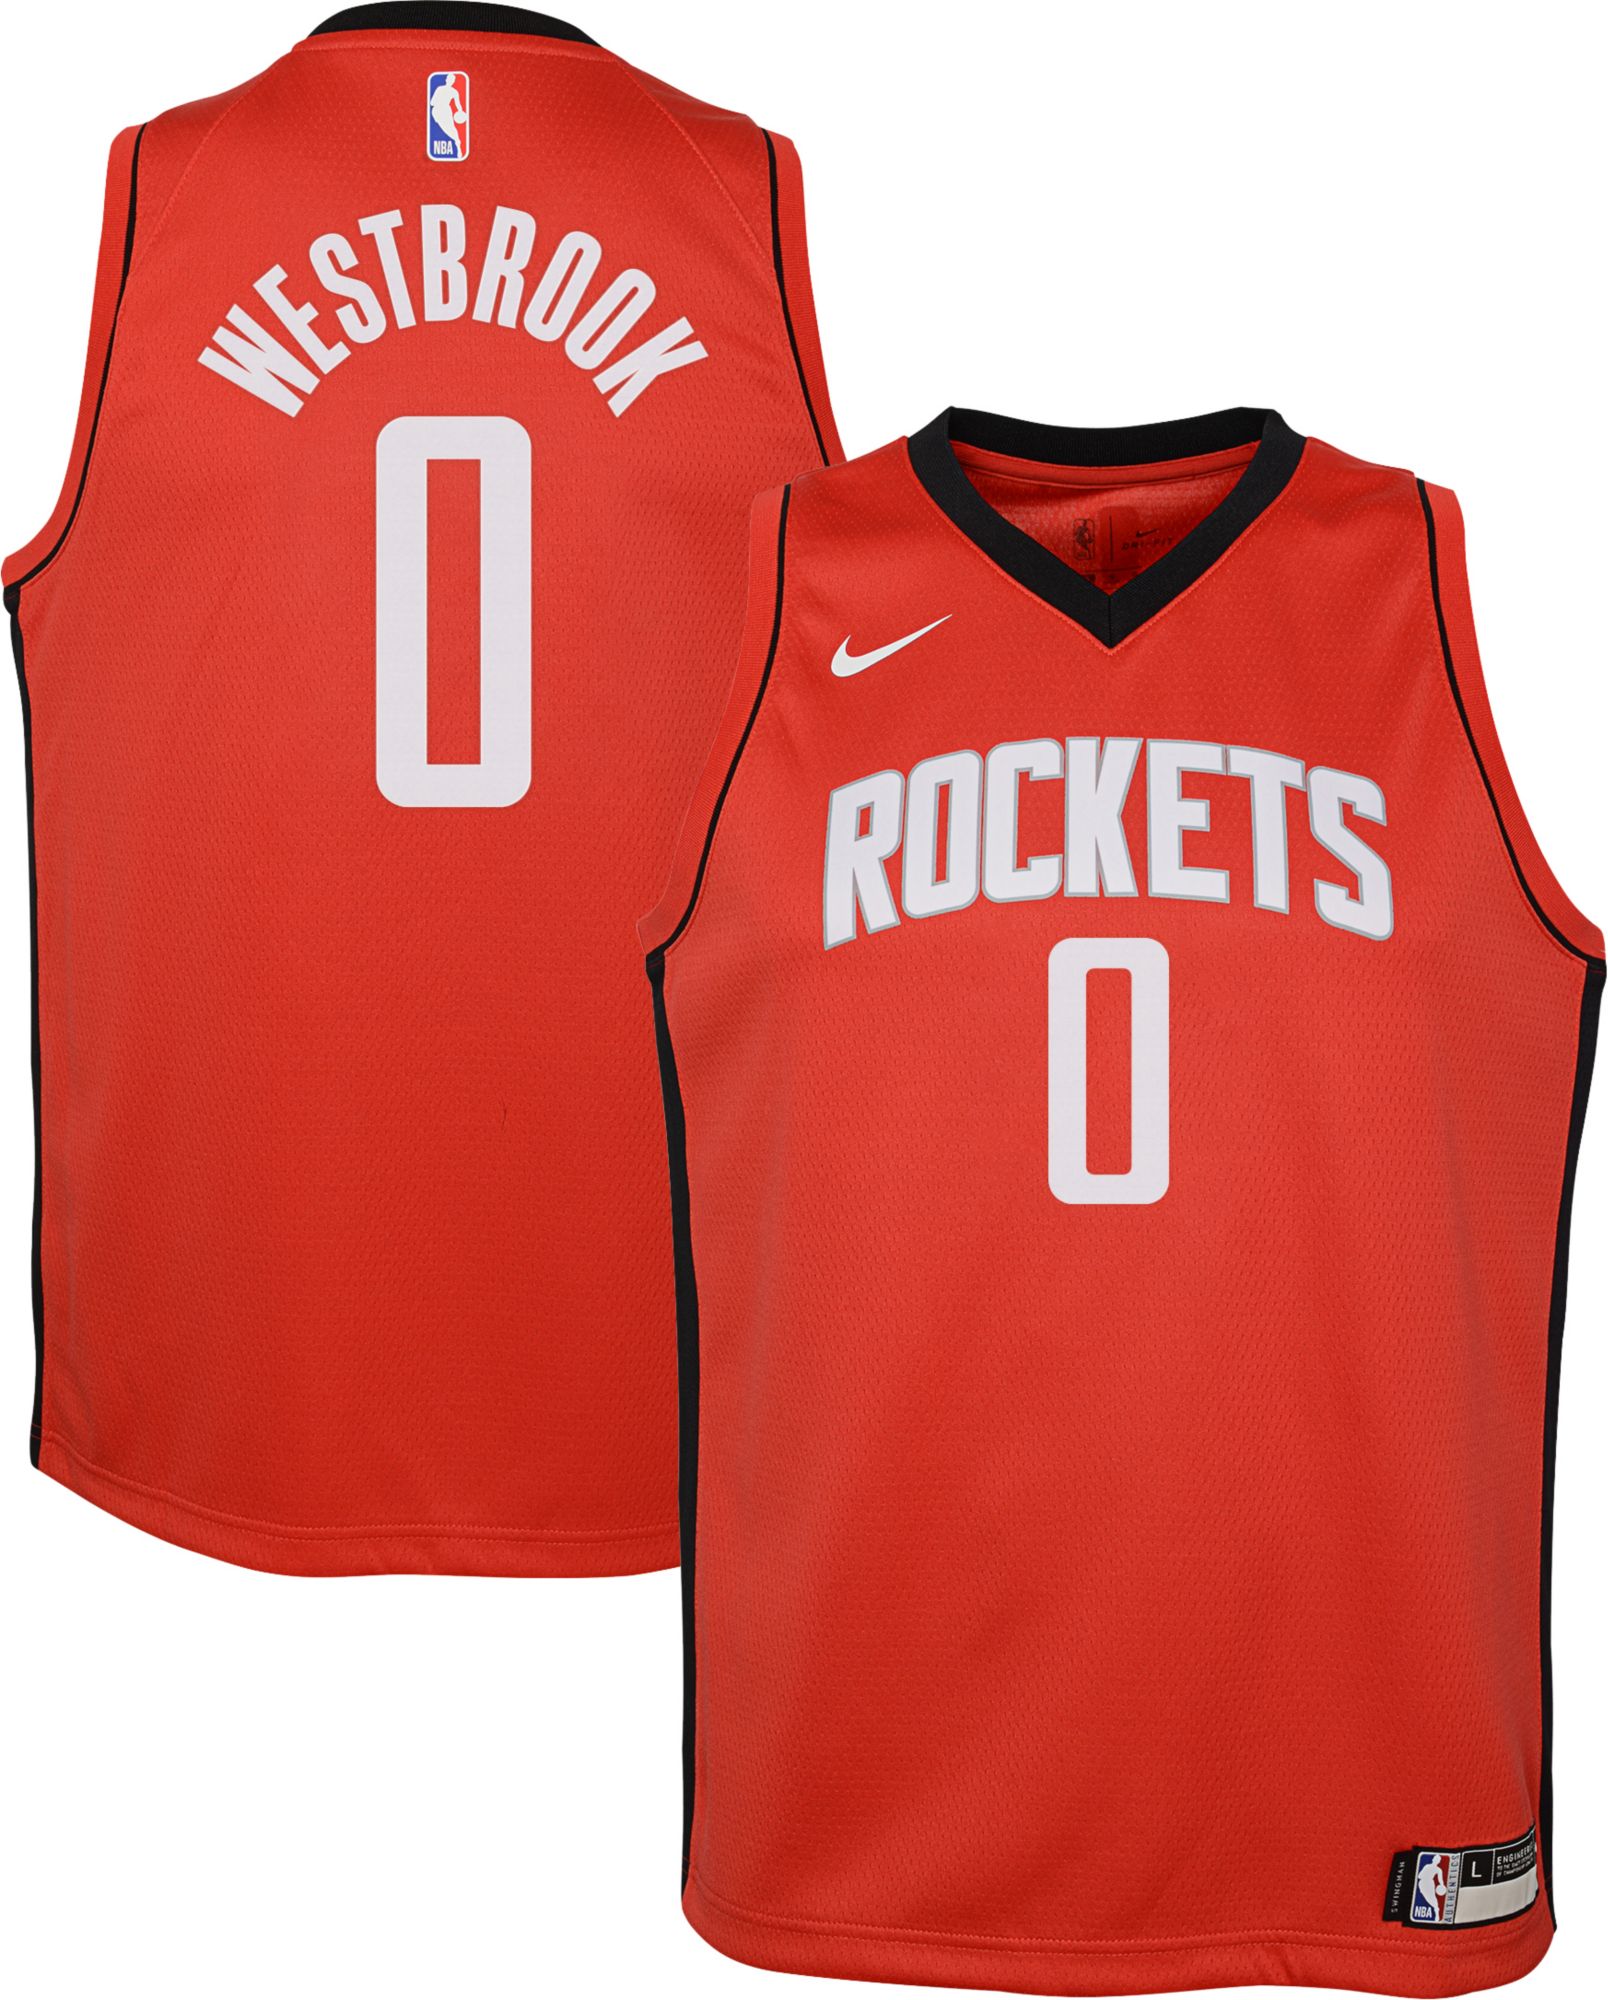 westbrook rockets shirt